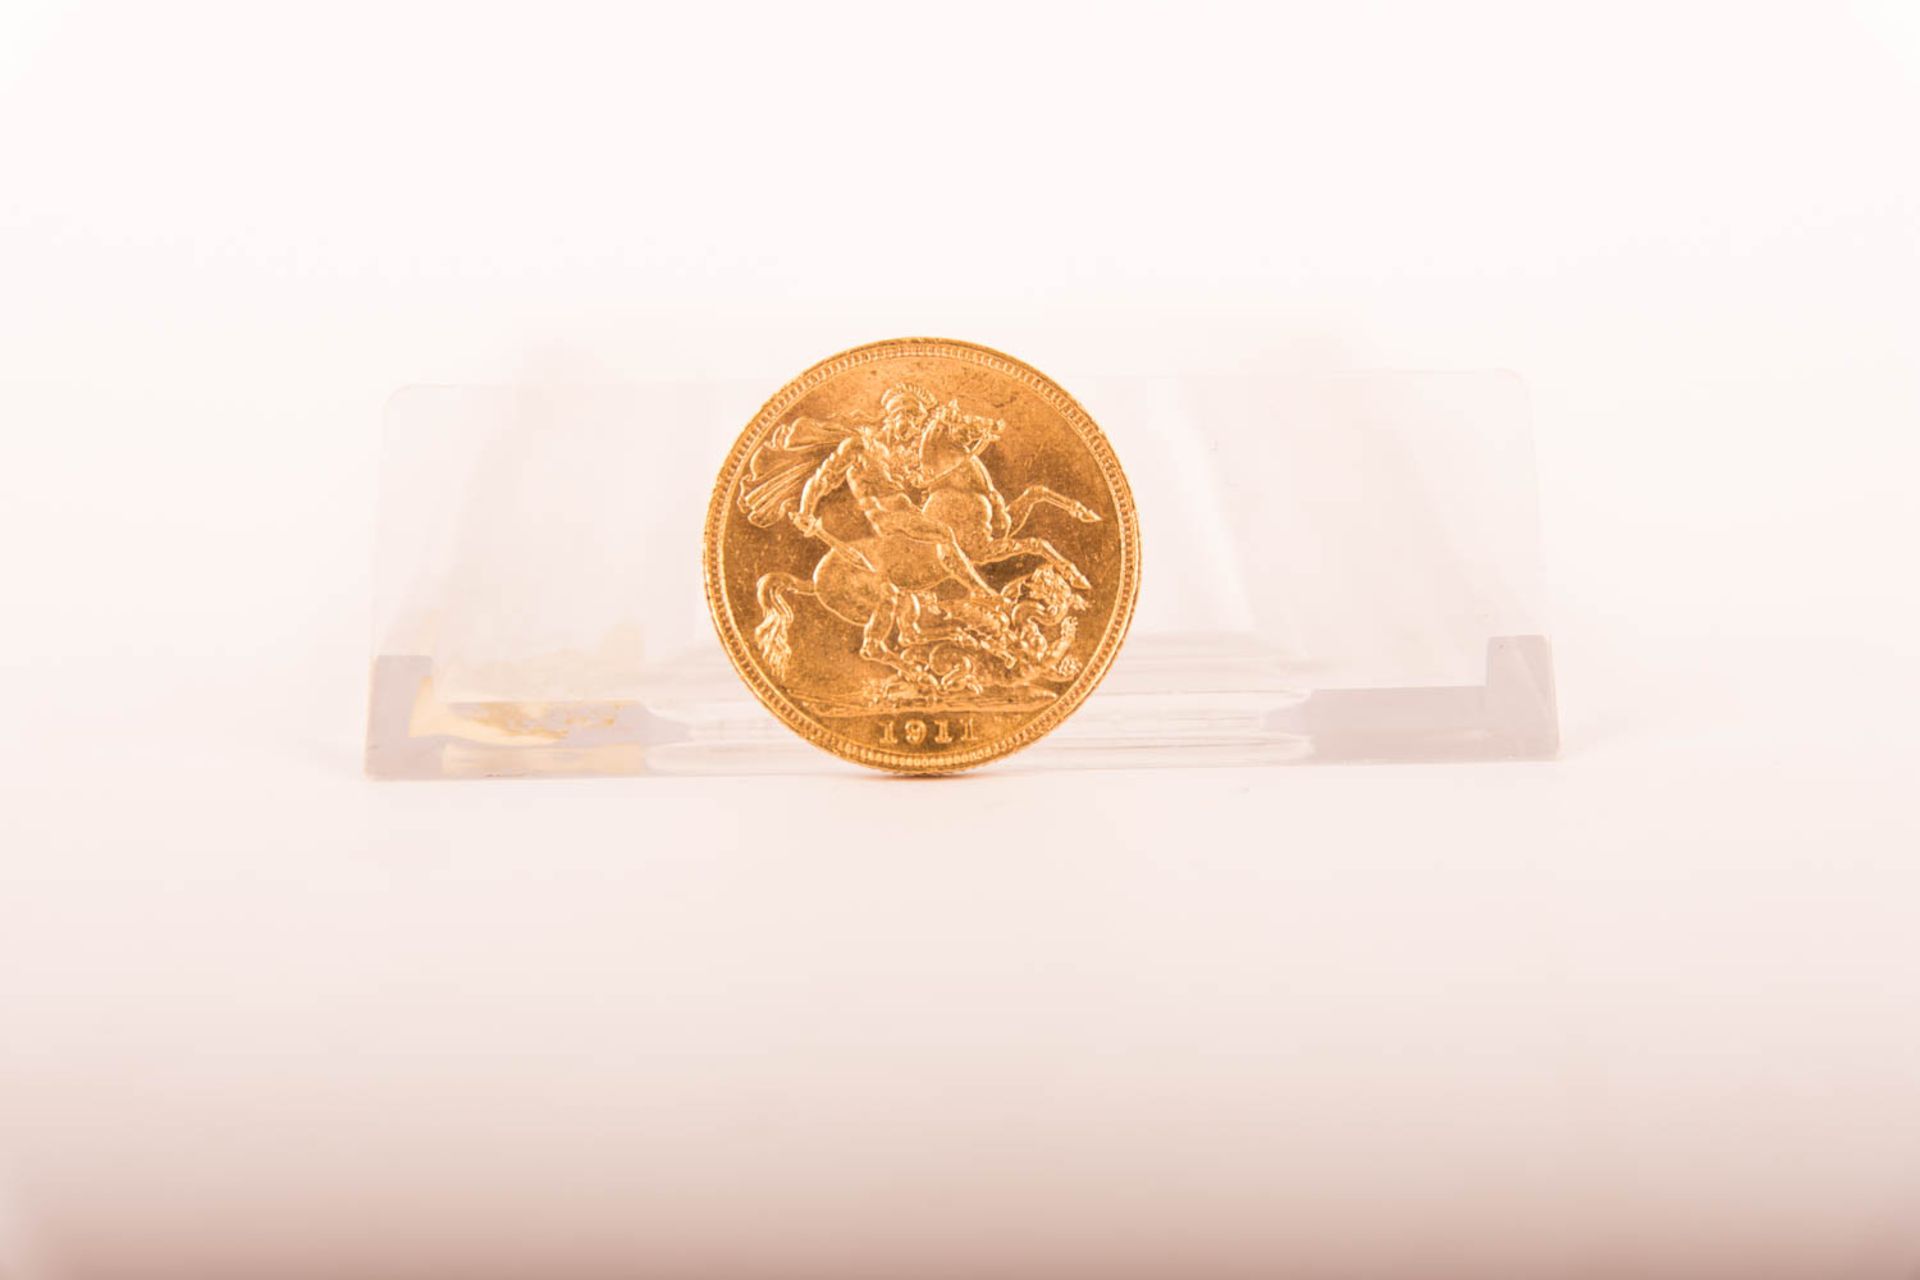 Konvolut von 4 Australien 1 Sovereign Goldmünzen. 1911 - 1912 - 1958 - 1974 - Image 6 of 10